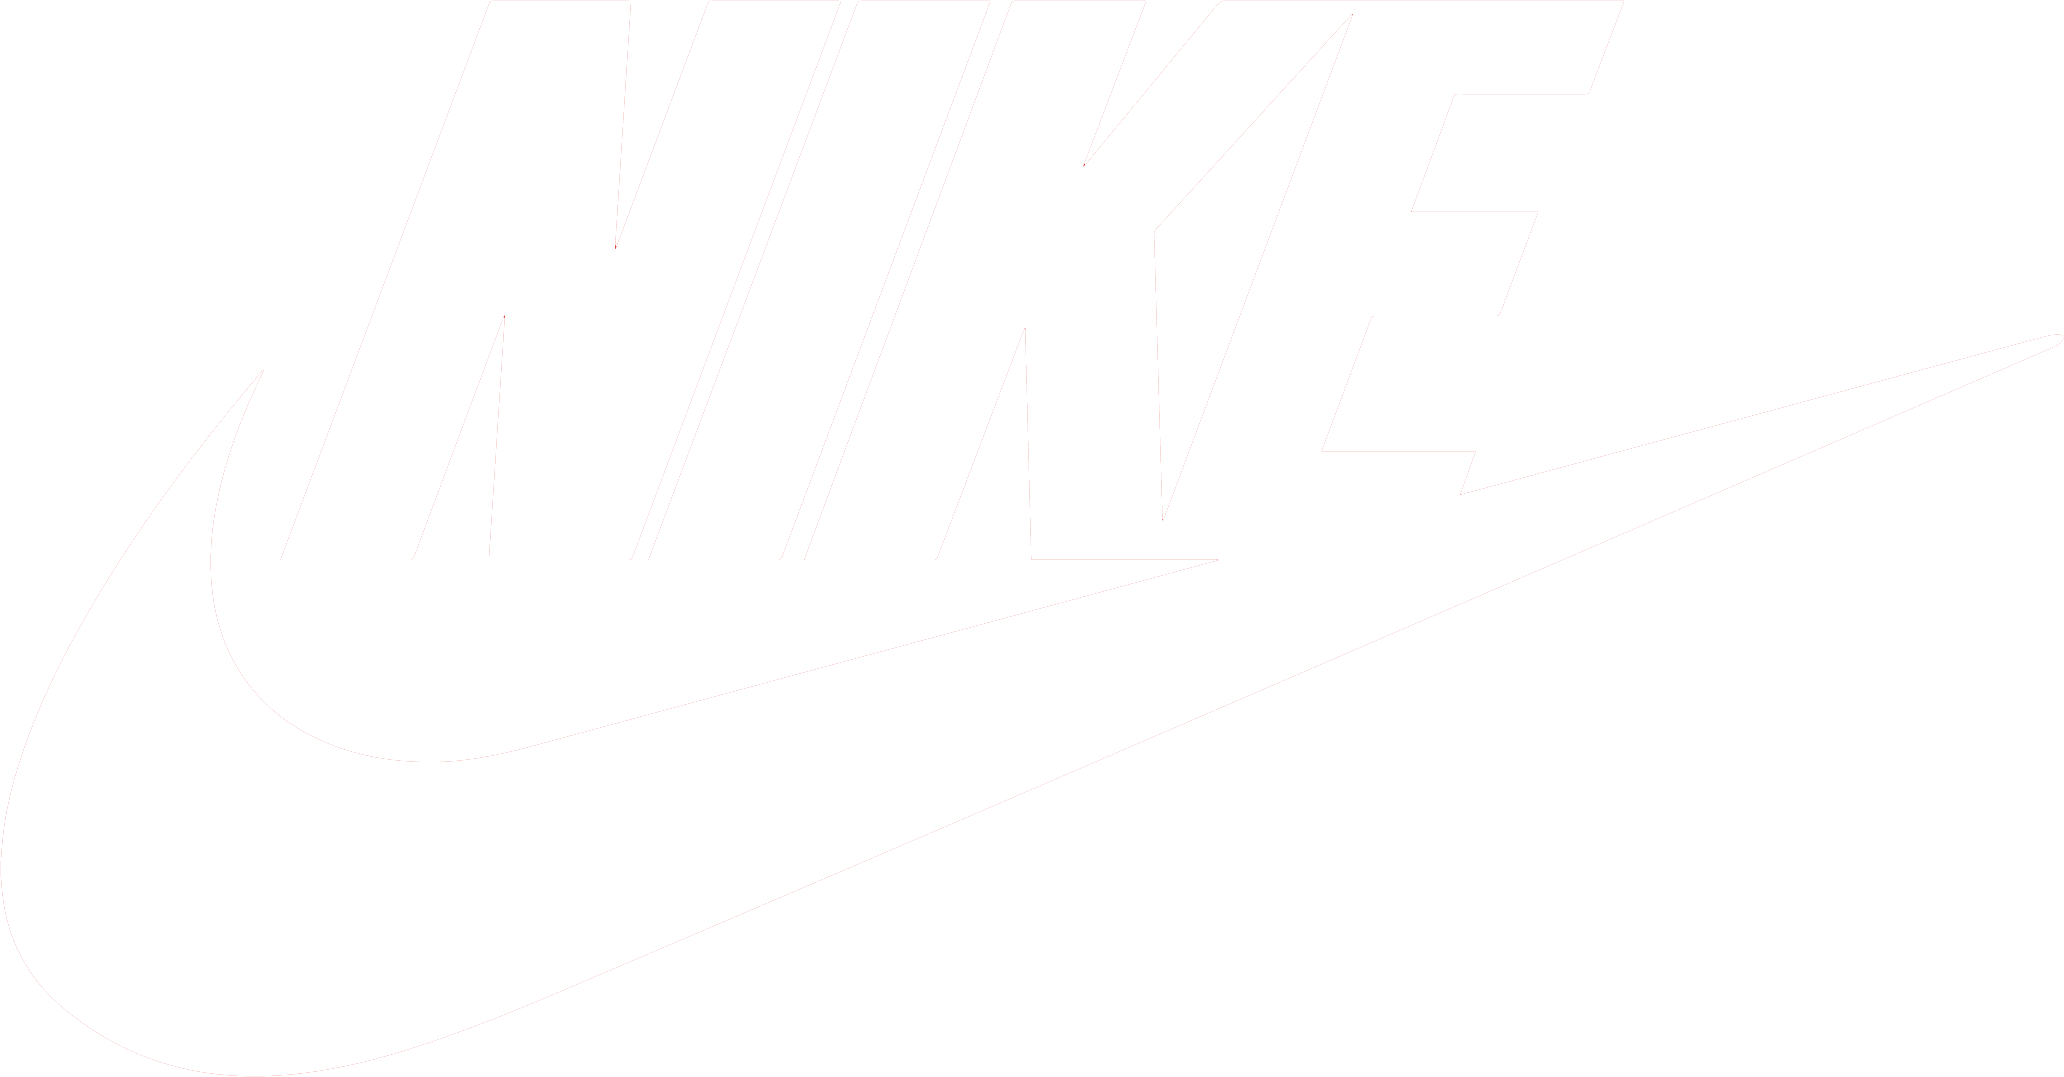 White Nike Logo - Nike logo PNG images free download